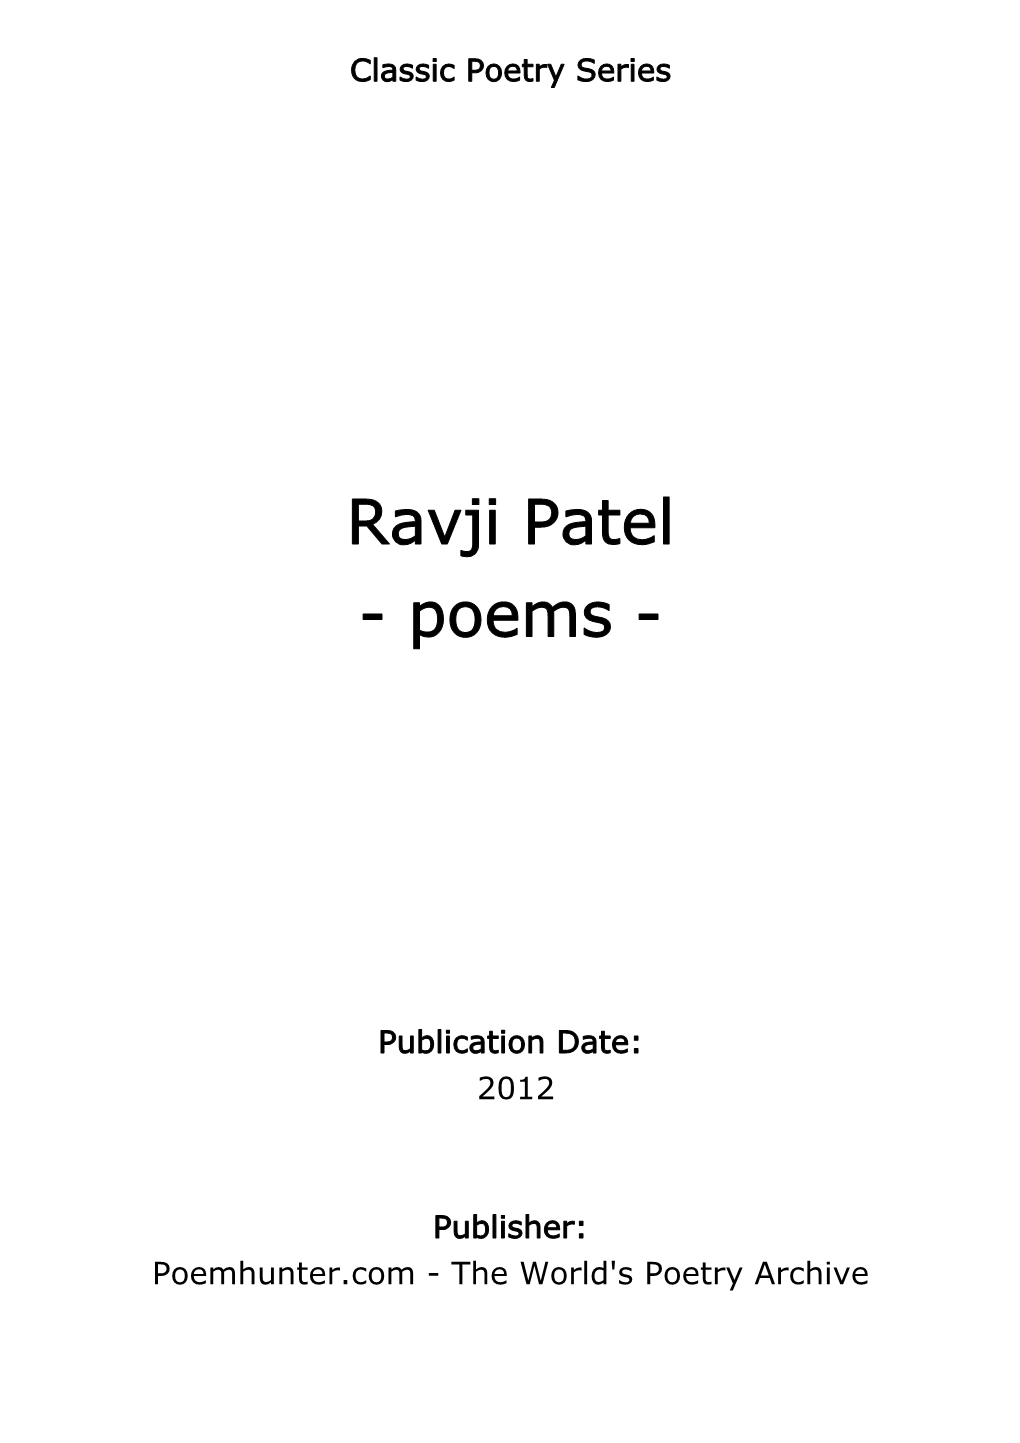 Ravji Patel - Poems